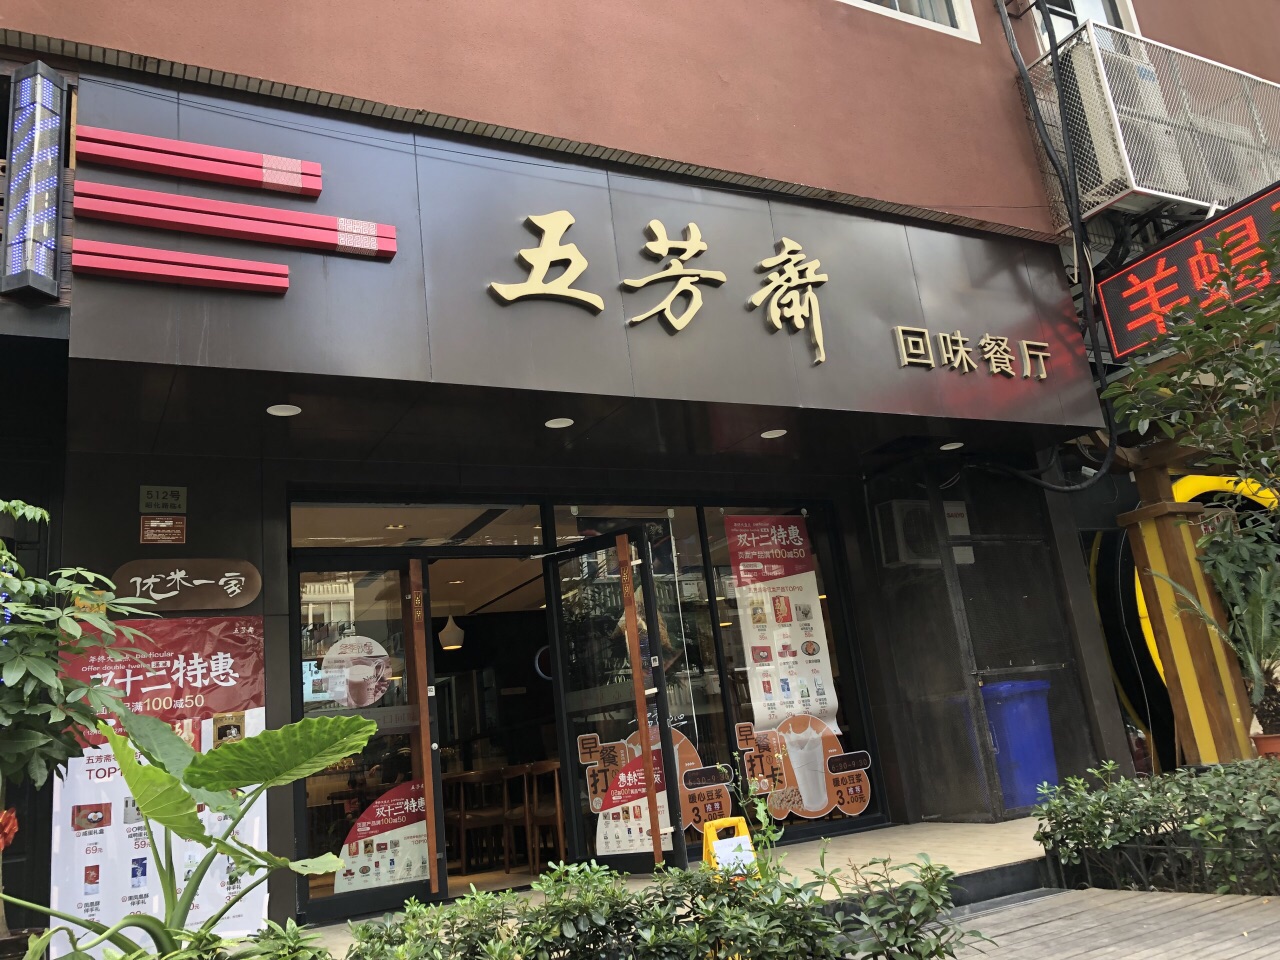 上海五芳斋(昭化路店)好吃吗,五芳斋(昭化路店)味道怎么样,环境/服务